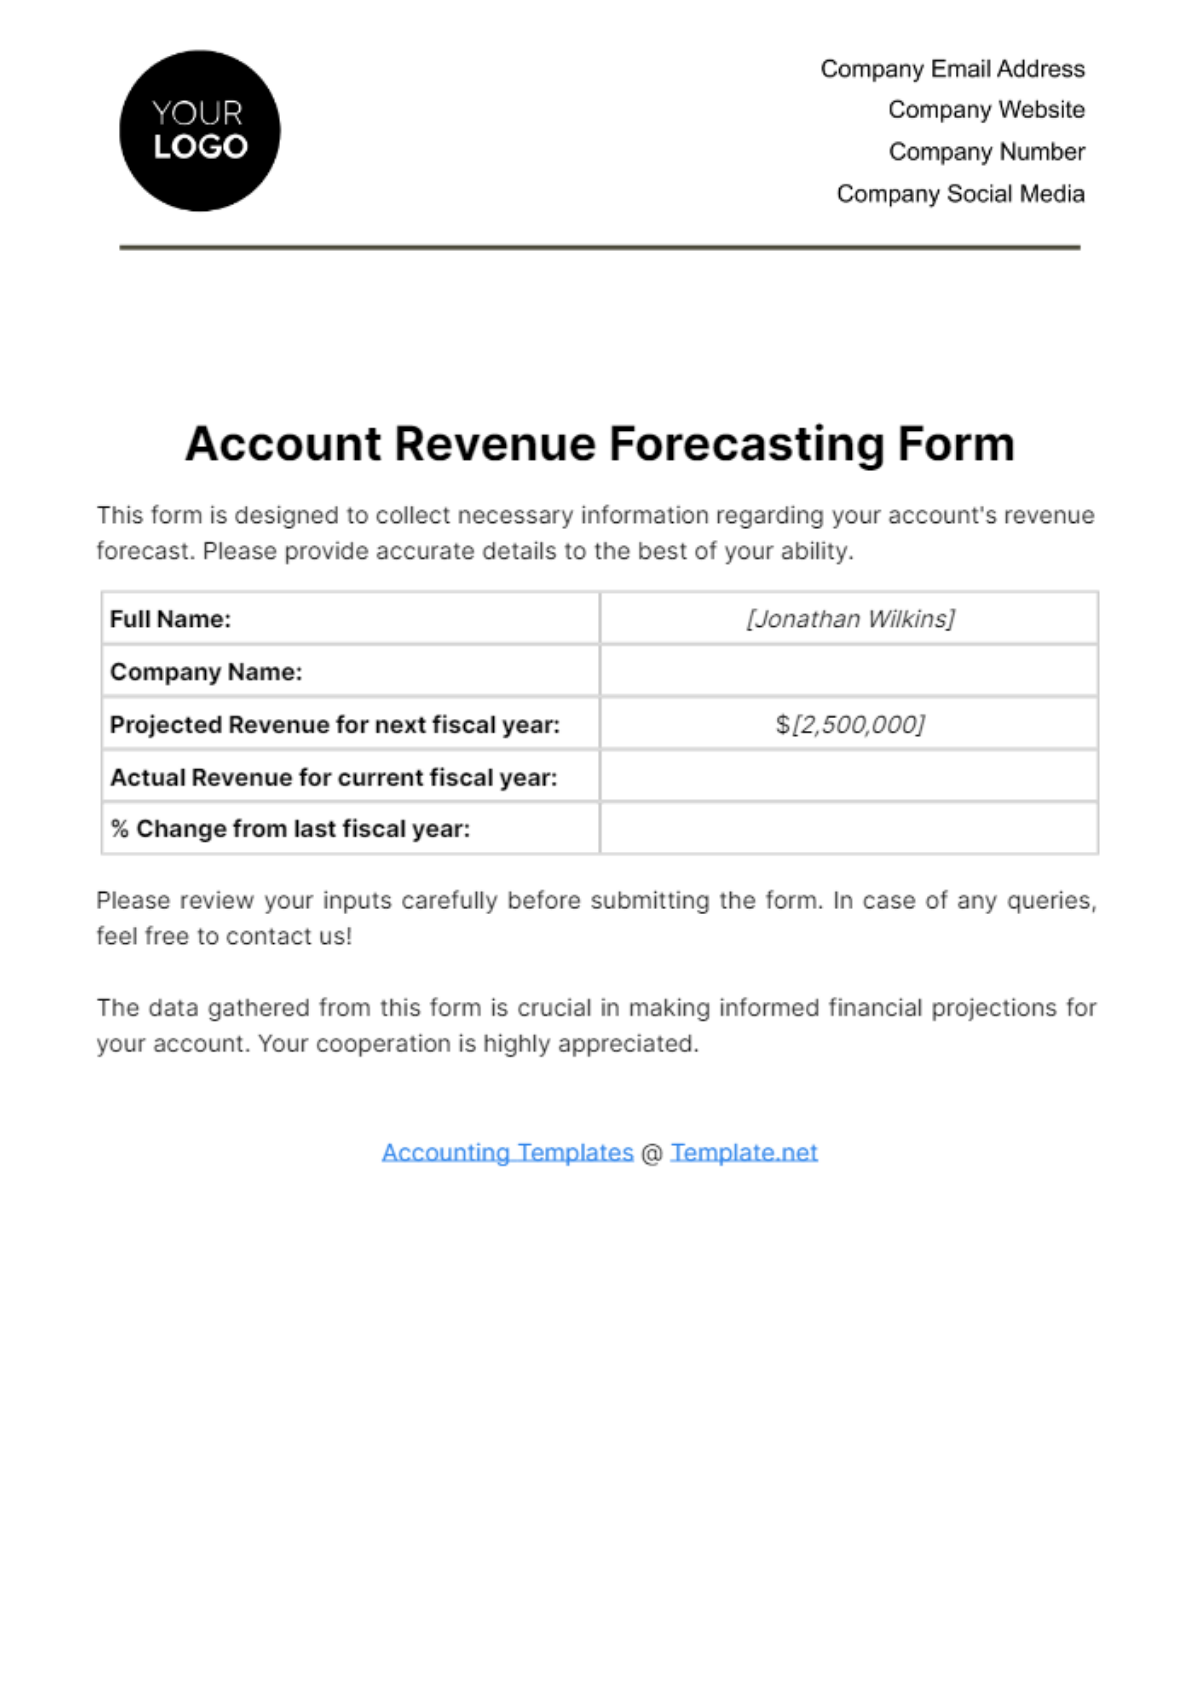 Account Revenue Forecasting Form Template